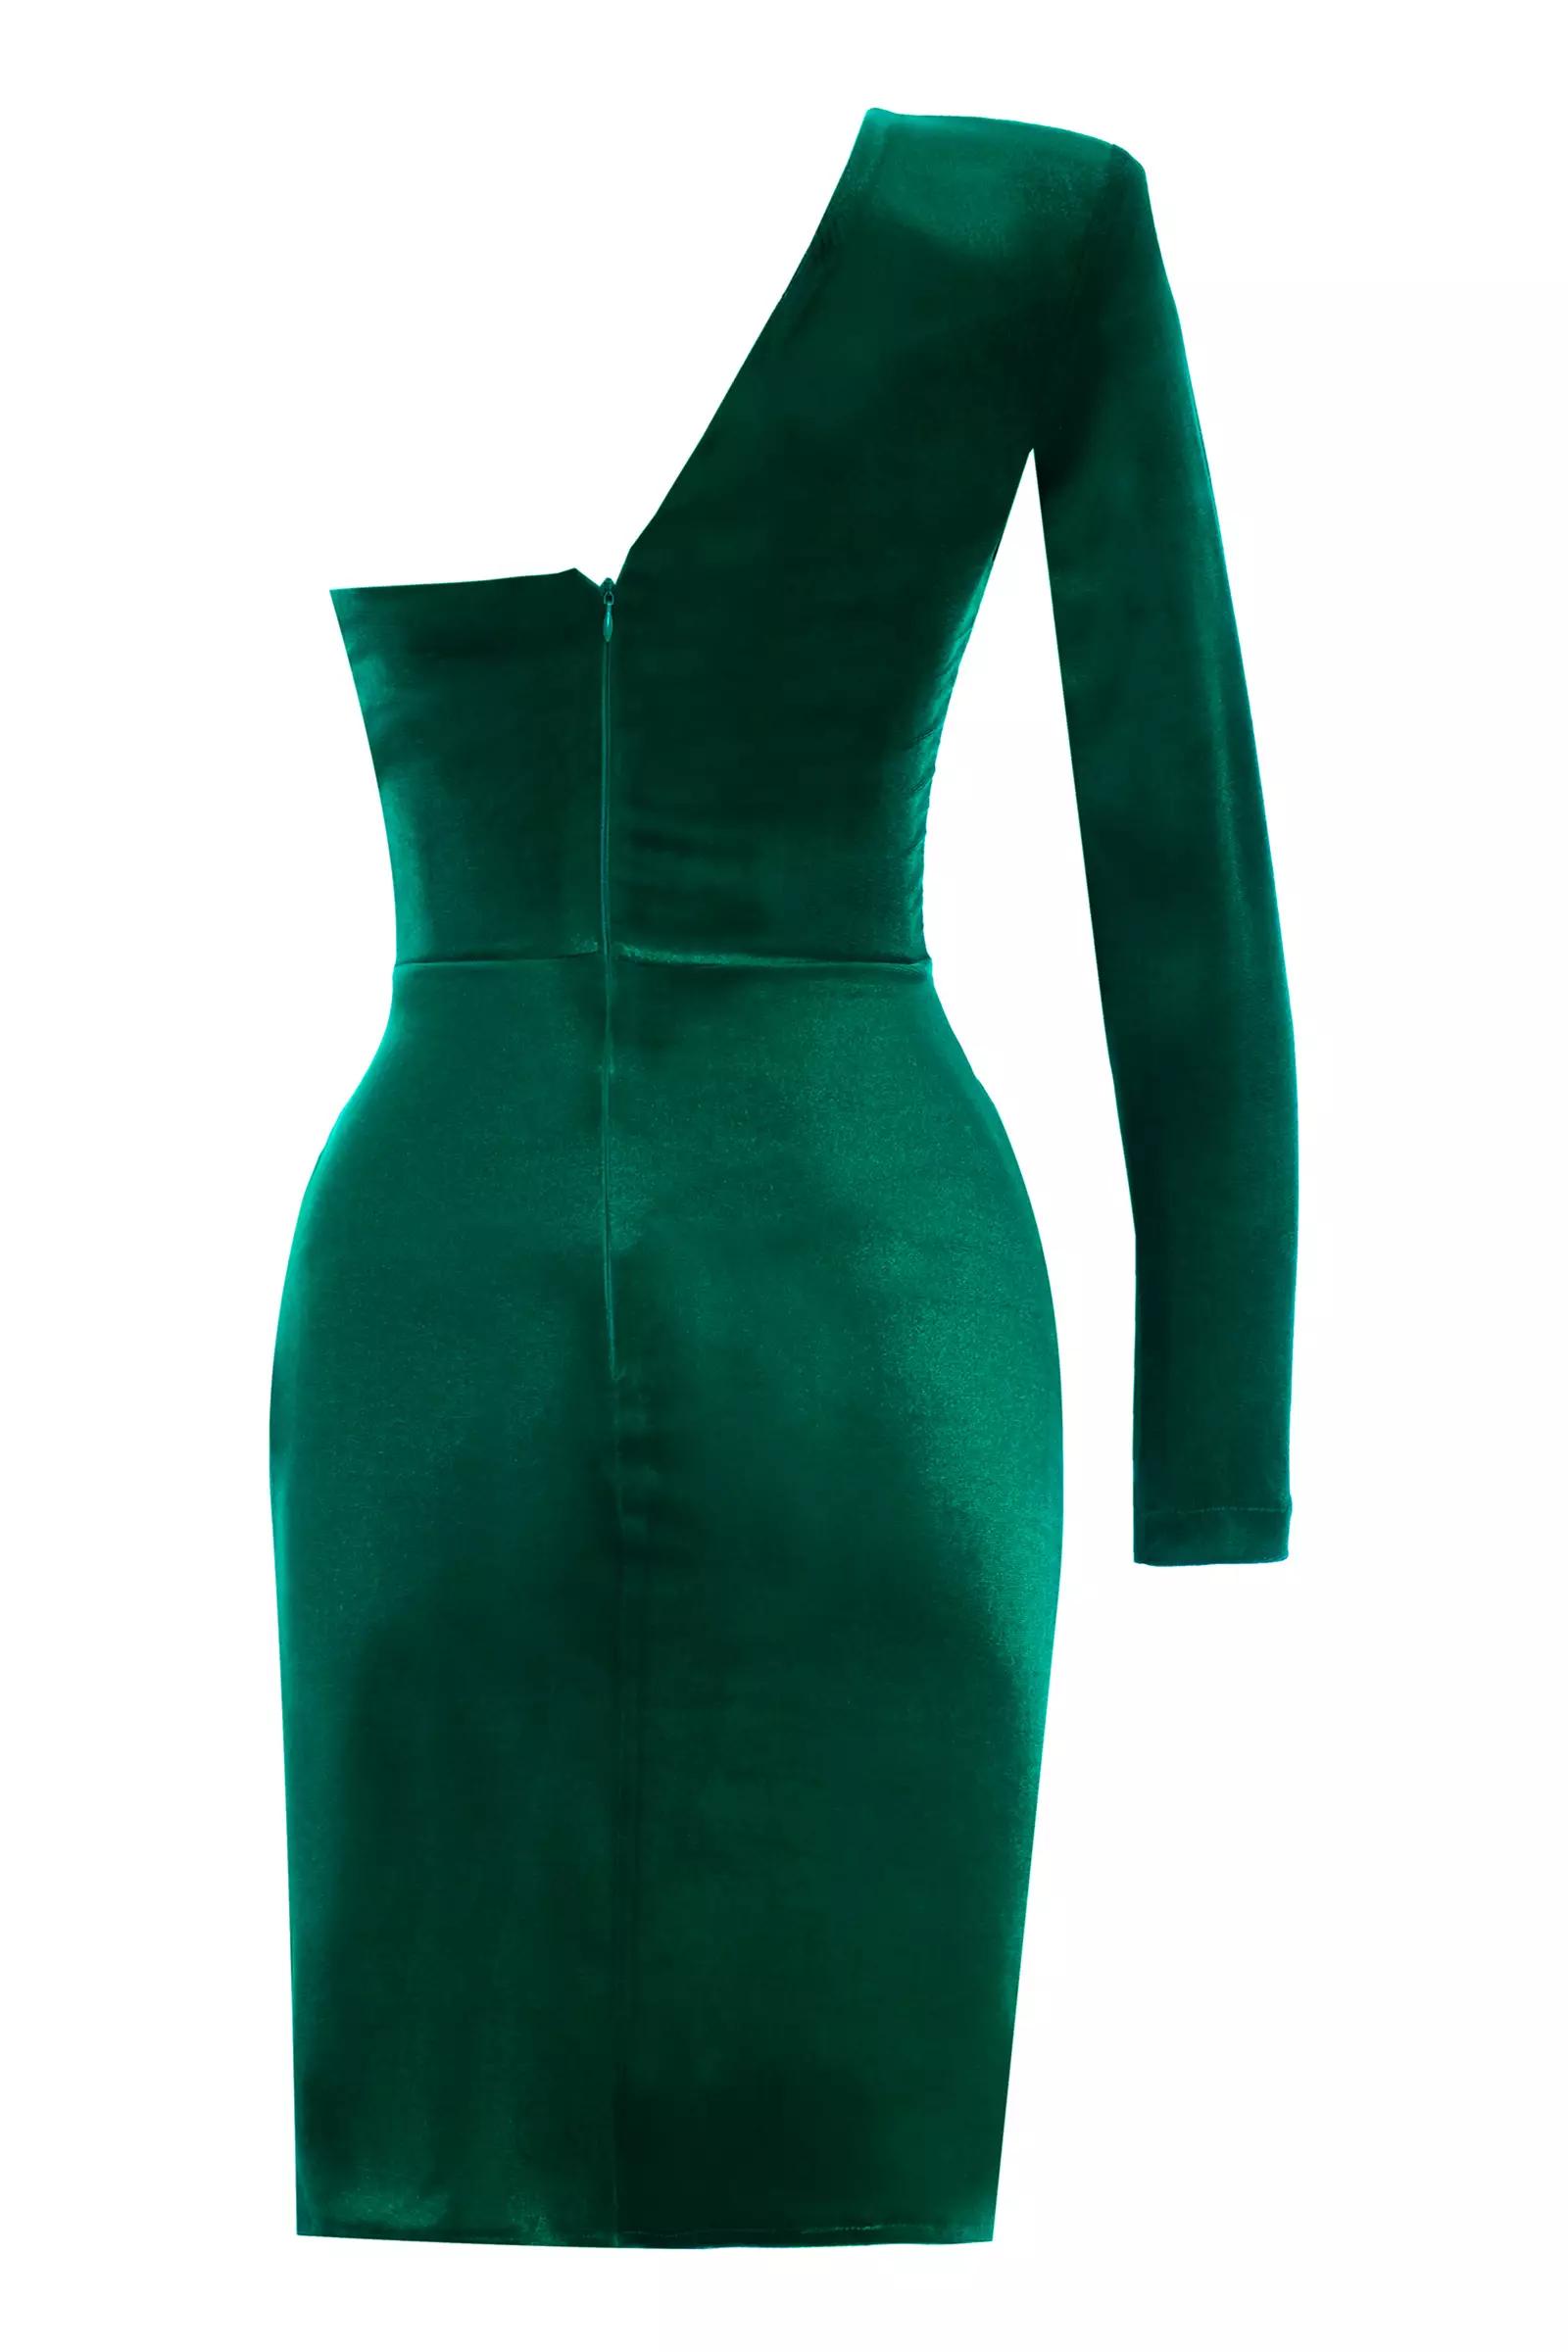 Green velvet one arm mini dress